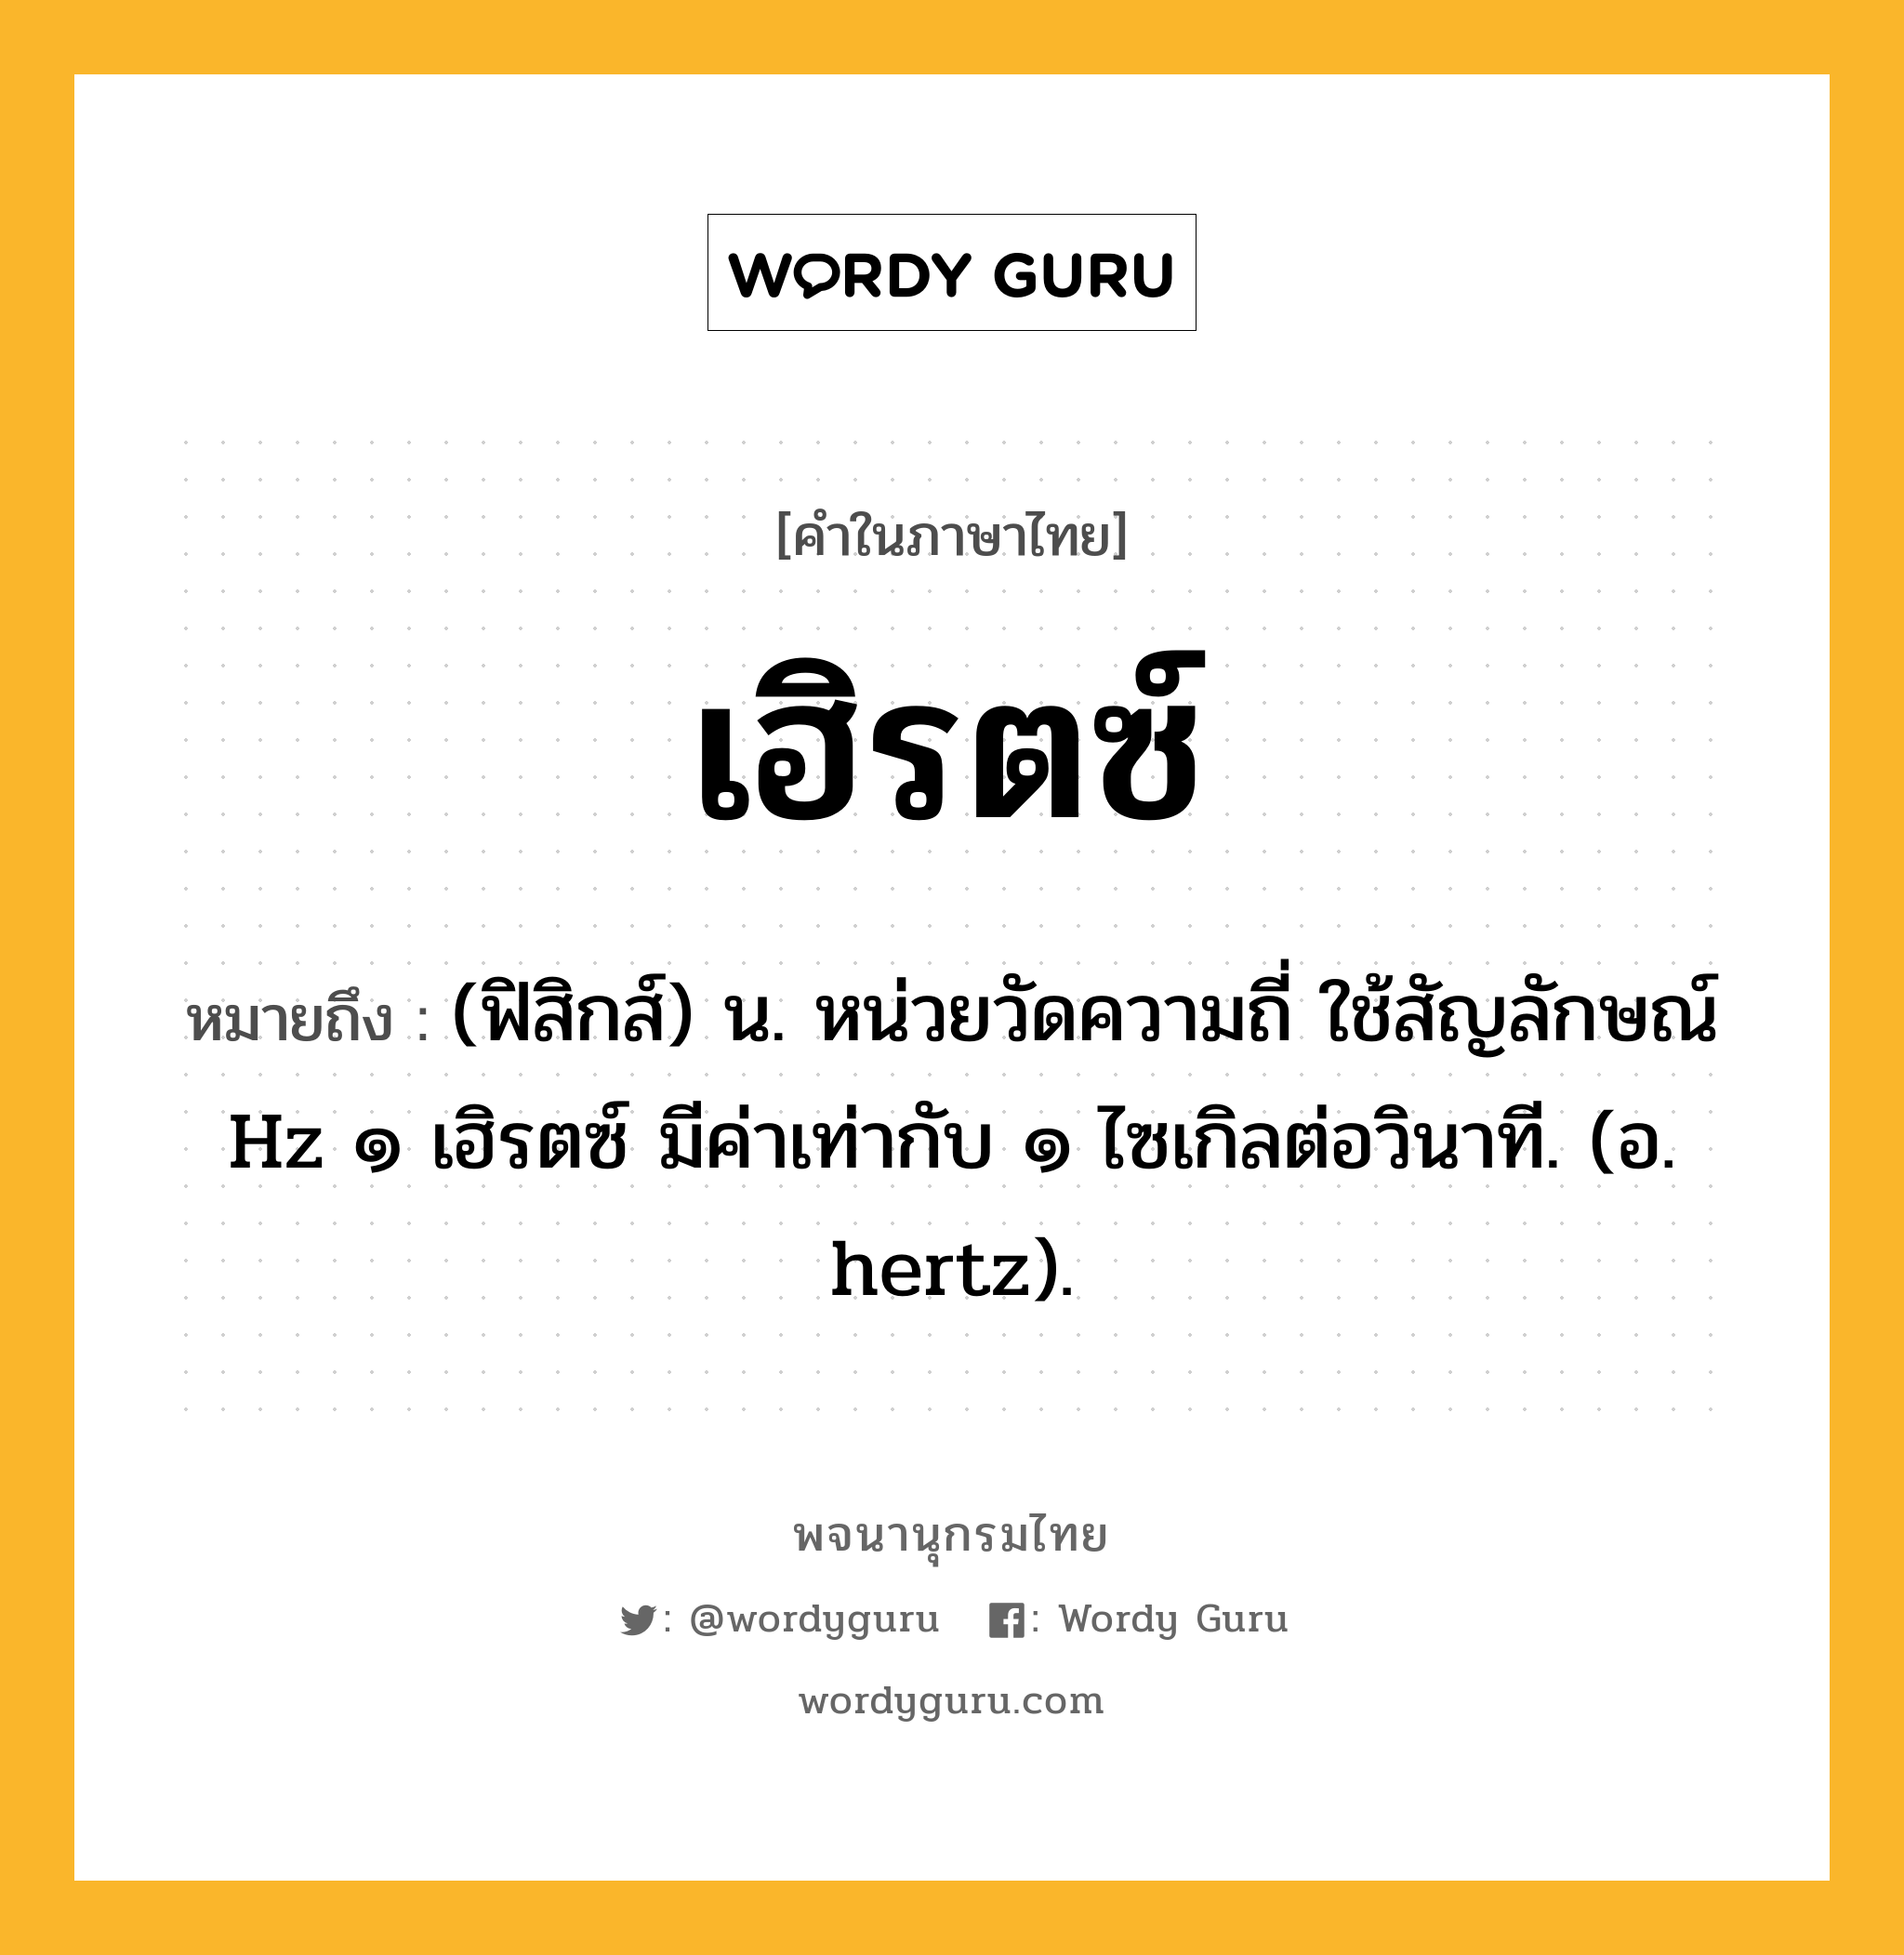 เฮิรตซ์ ความหมาย หมายถึงอะไร?, คำในภาษาไทย เฮิรตซ์ หมายถึง (ฟิสิกส์) น. หน่วยวัดความถี่ ใช้สัญลักษณ์ Hz ๑ เฮิรตซ์ มีค่าเท่ากับ ๑ ไซเกิลต่อวินาที. (อ. hertz).